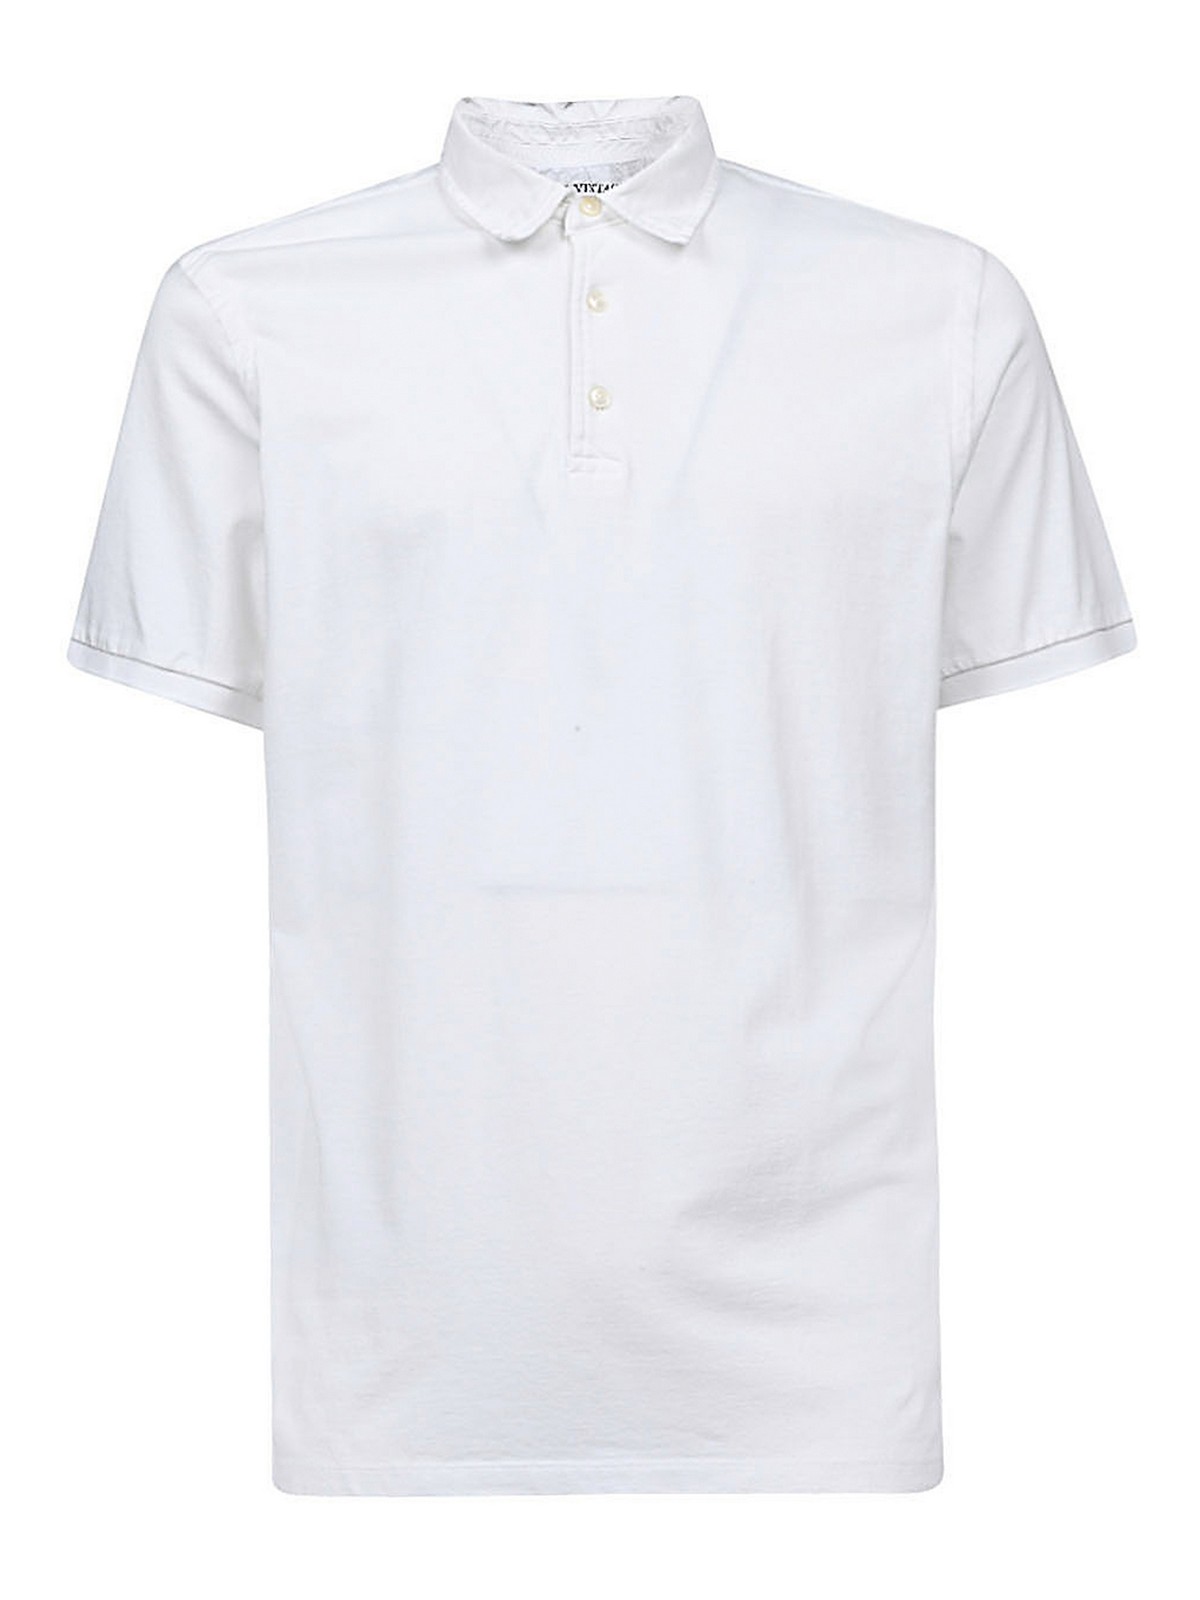 Original Vintage Style Cotton Polo Shirt In White